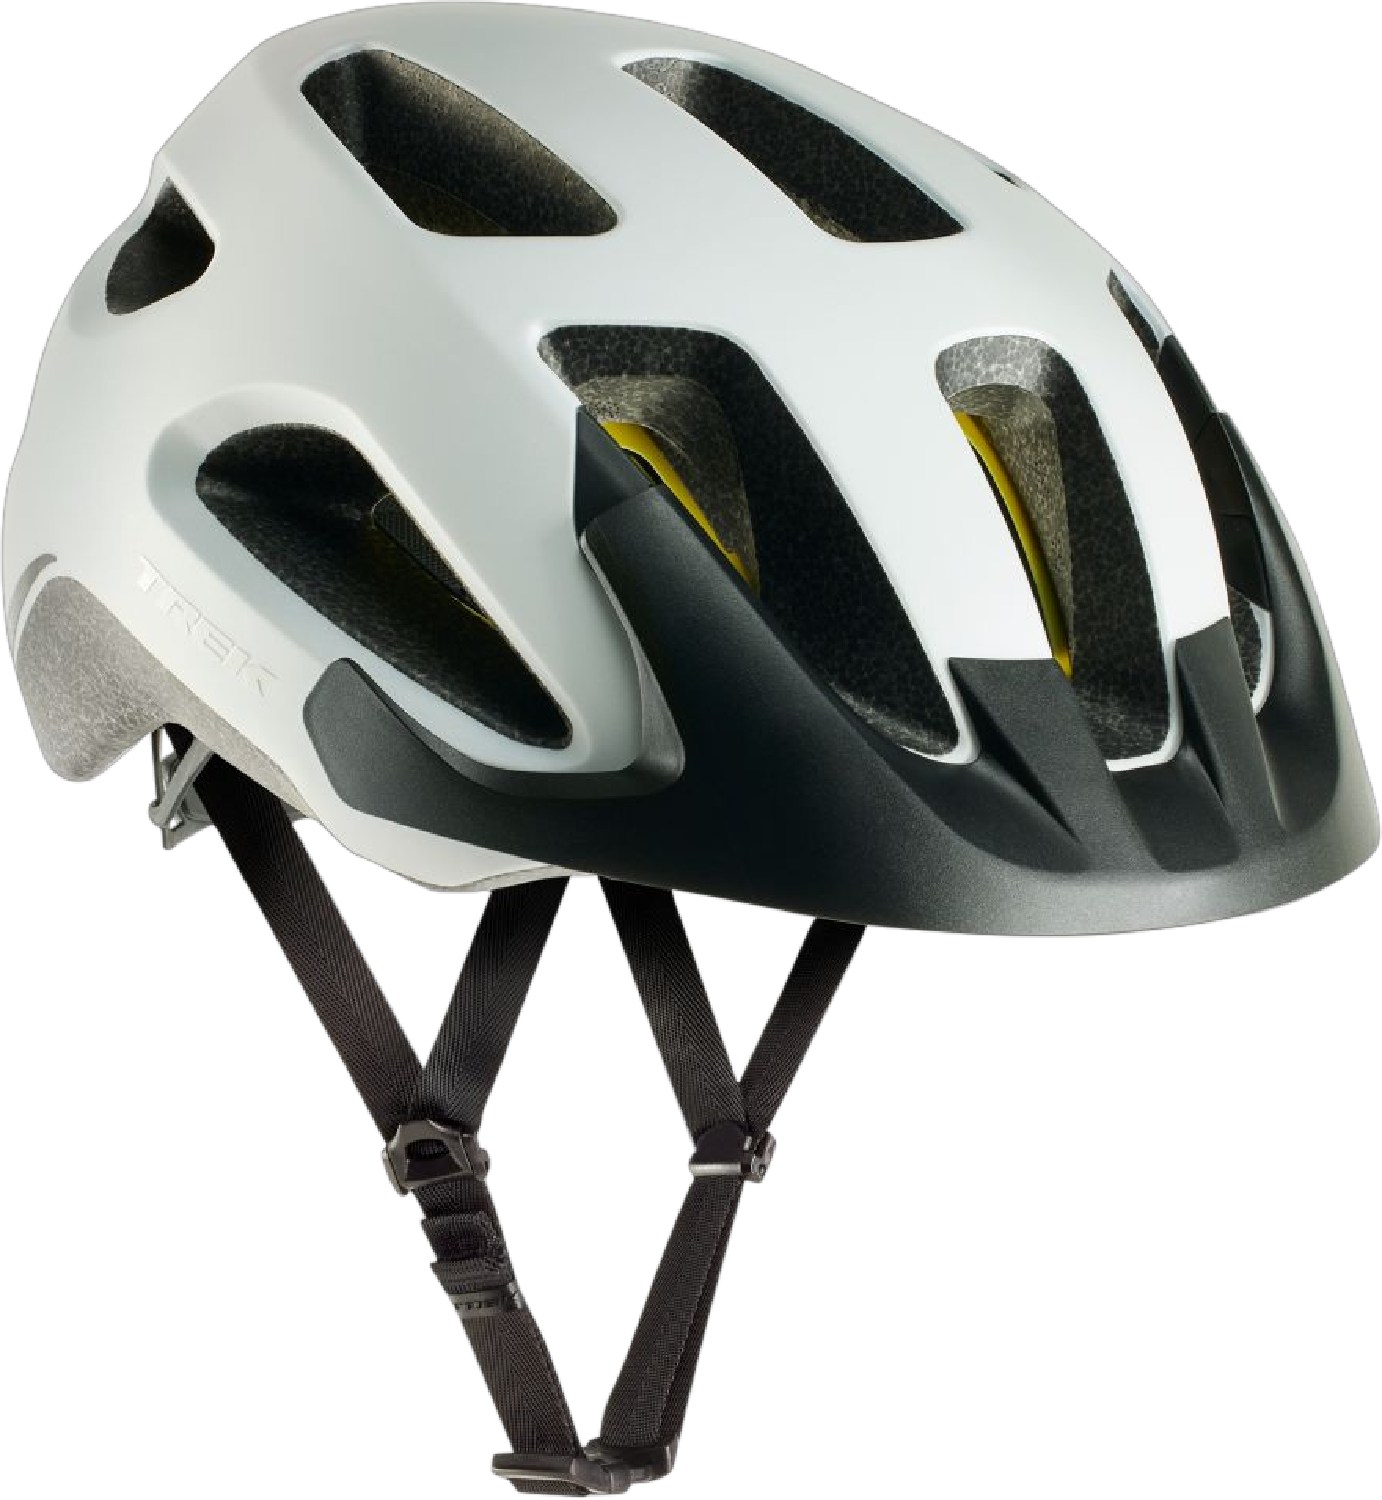 Велосипедный шлем Solstice Mips Trek, белый велосипедный задний переключатель передач 2 шт вешалка для трека 322175 trek elite trek zтеперь trek 7 2 fx wsd гэри фишера mendota mech dropout